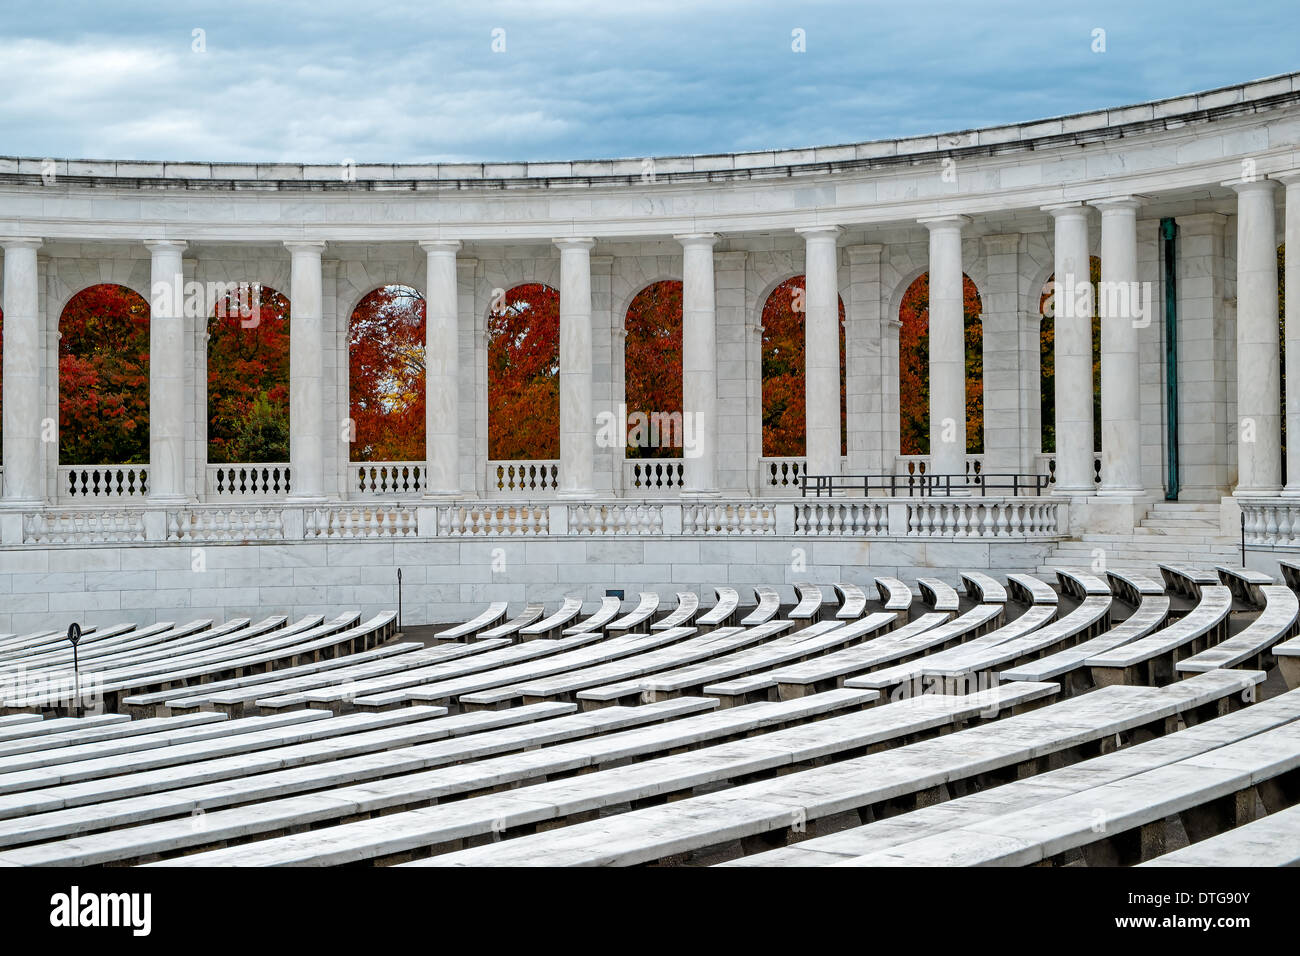 Vue de les détails architecturaux et feuillage coloré d'automne à son apogée, à l'Arlington Memorial Amphitheater au cimetière national d'Arlington en Virginie. L'Amphithéâtre est situé à côté de la tombe de l'inconnu des soldats. Banque D'Images